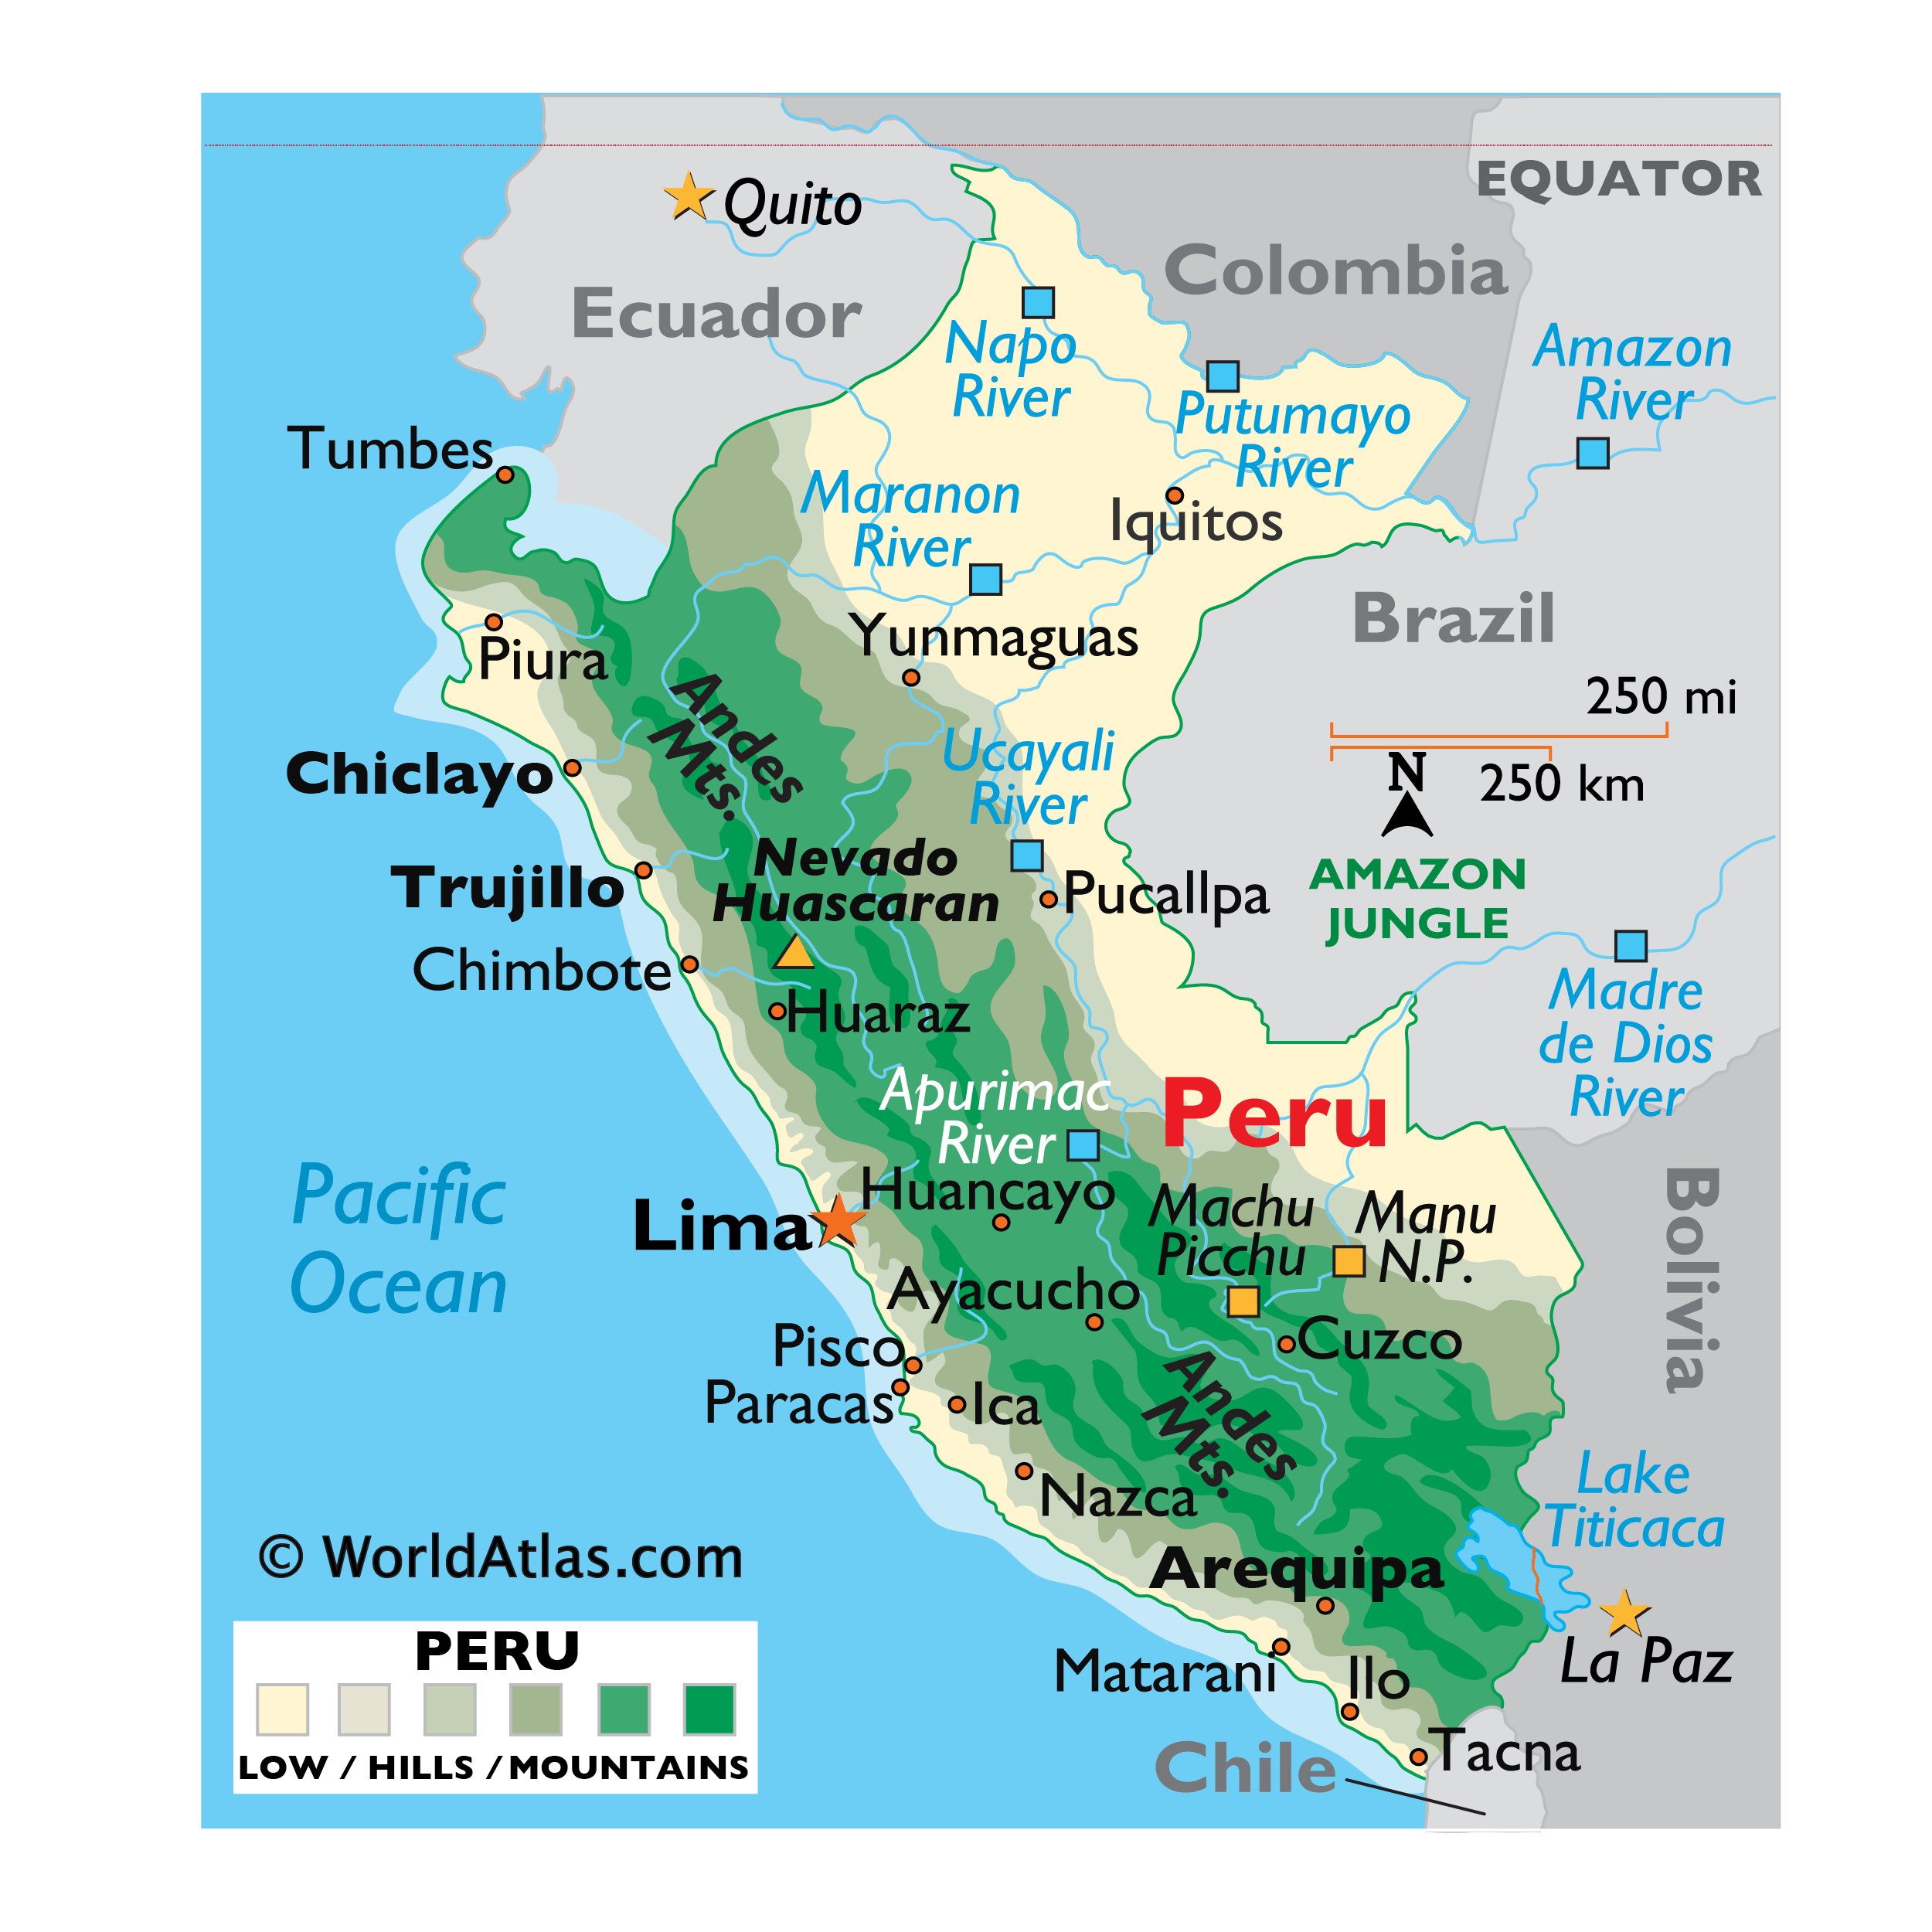 Peru Map / Geography of Peru / Map of Peru - Worldatlas.com